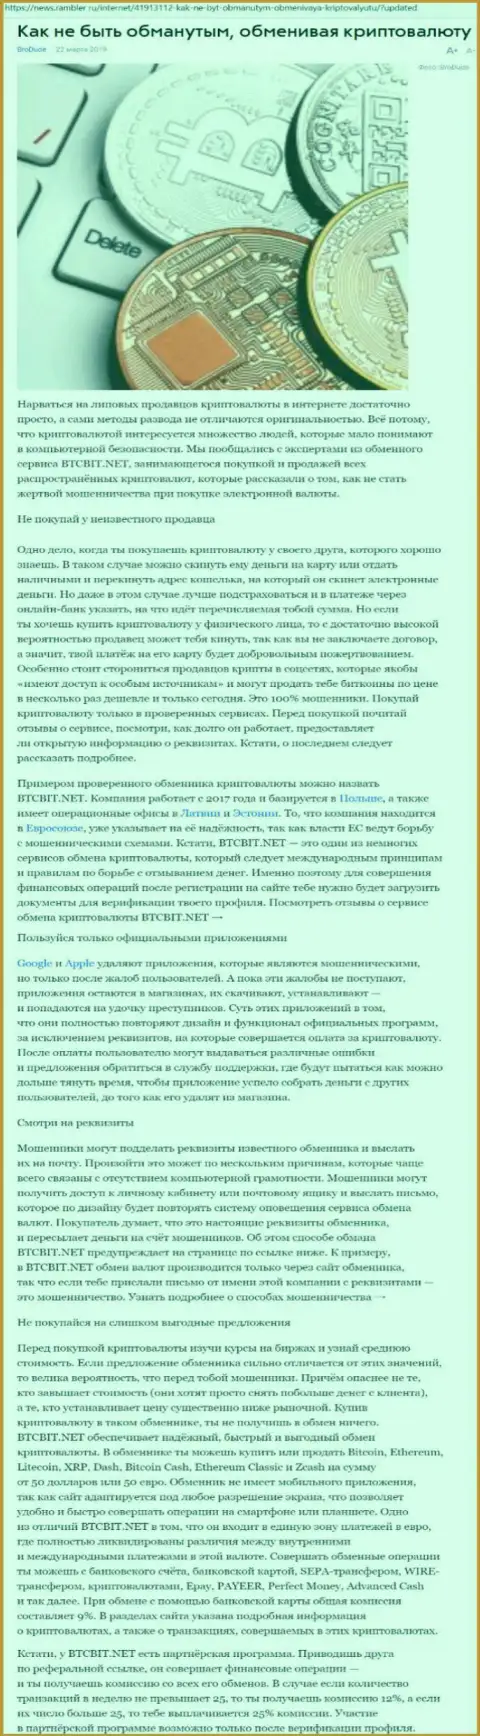 Статья о компании BTCBIT Net на news rambler ru